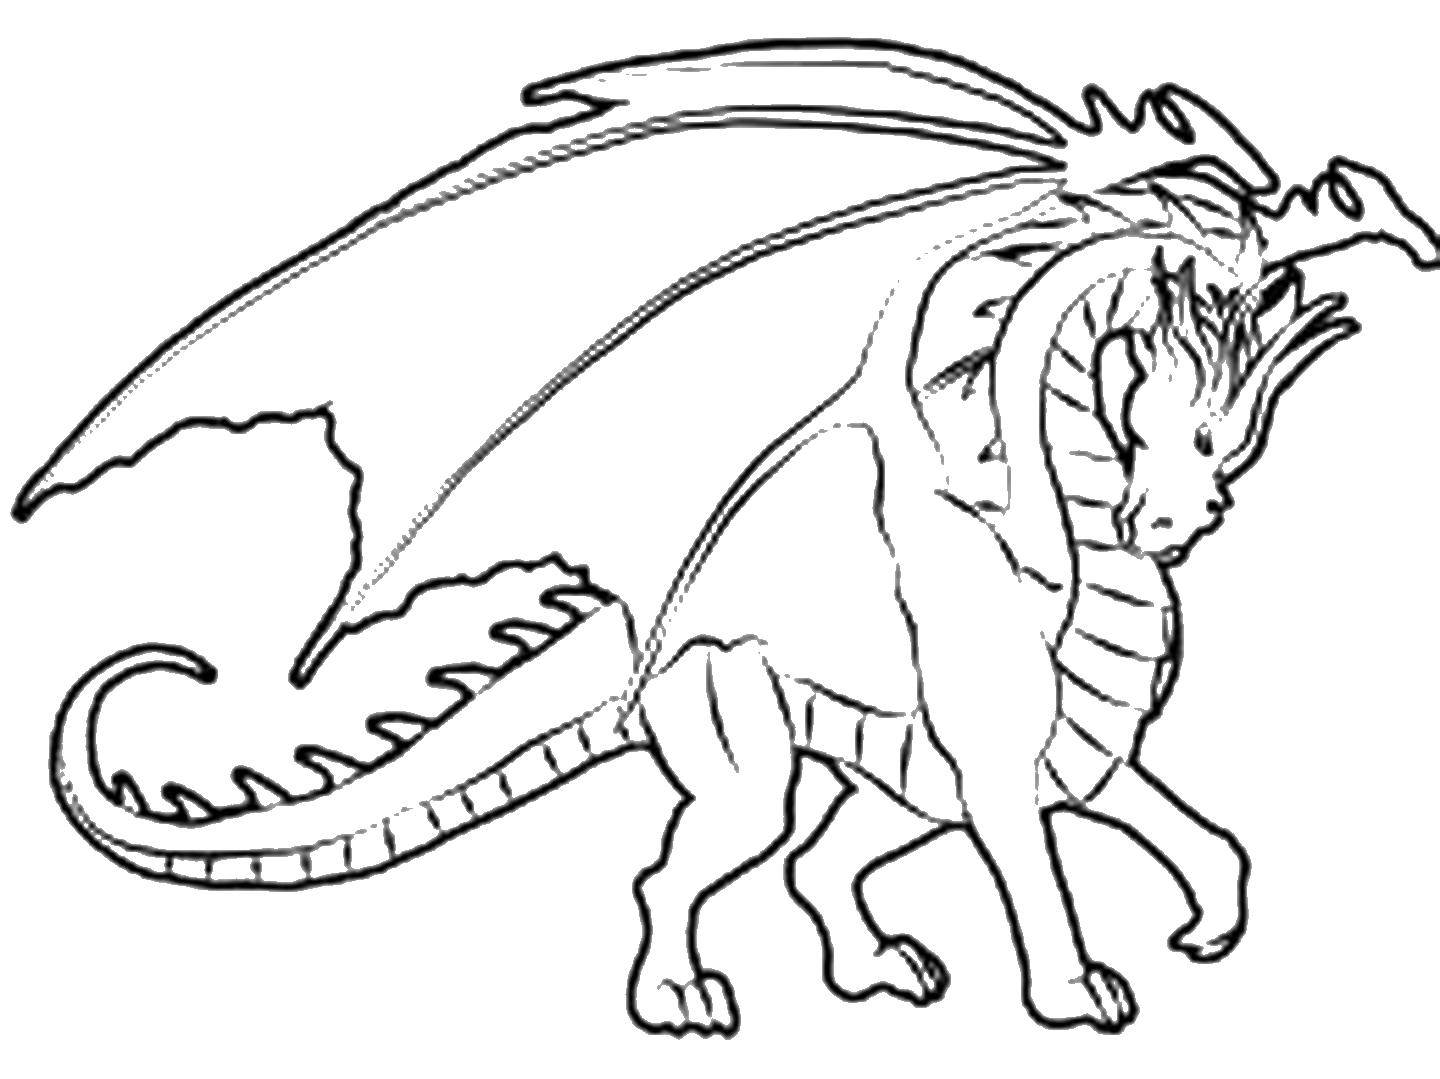 Раскраска с драконом для детей (драконы, увлекательное)